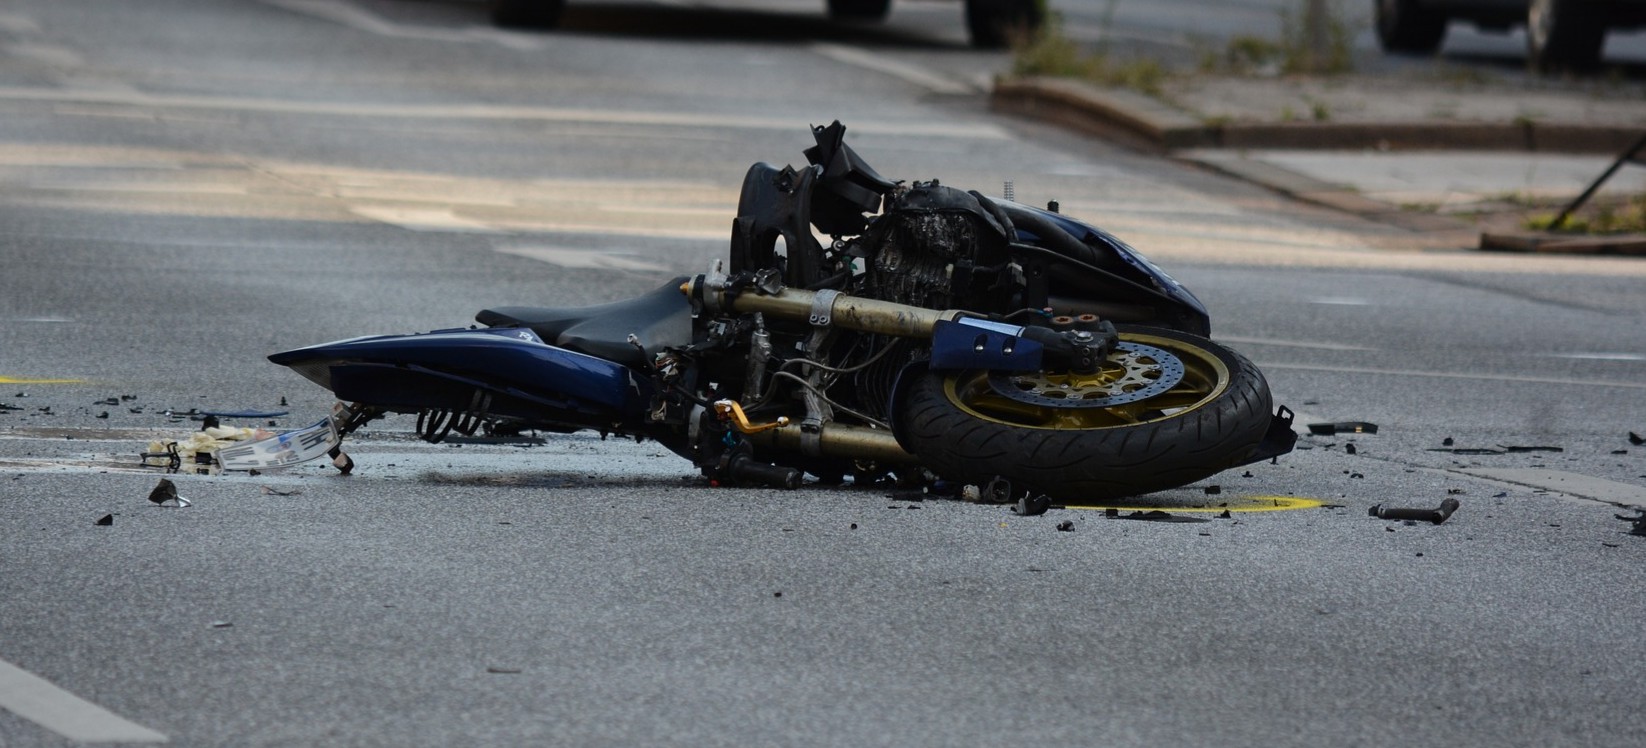 Dwa tragiczne wypadki. Nie żyją młodzi motocykliści (ZDJĘCIA)